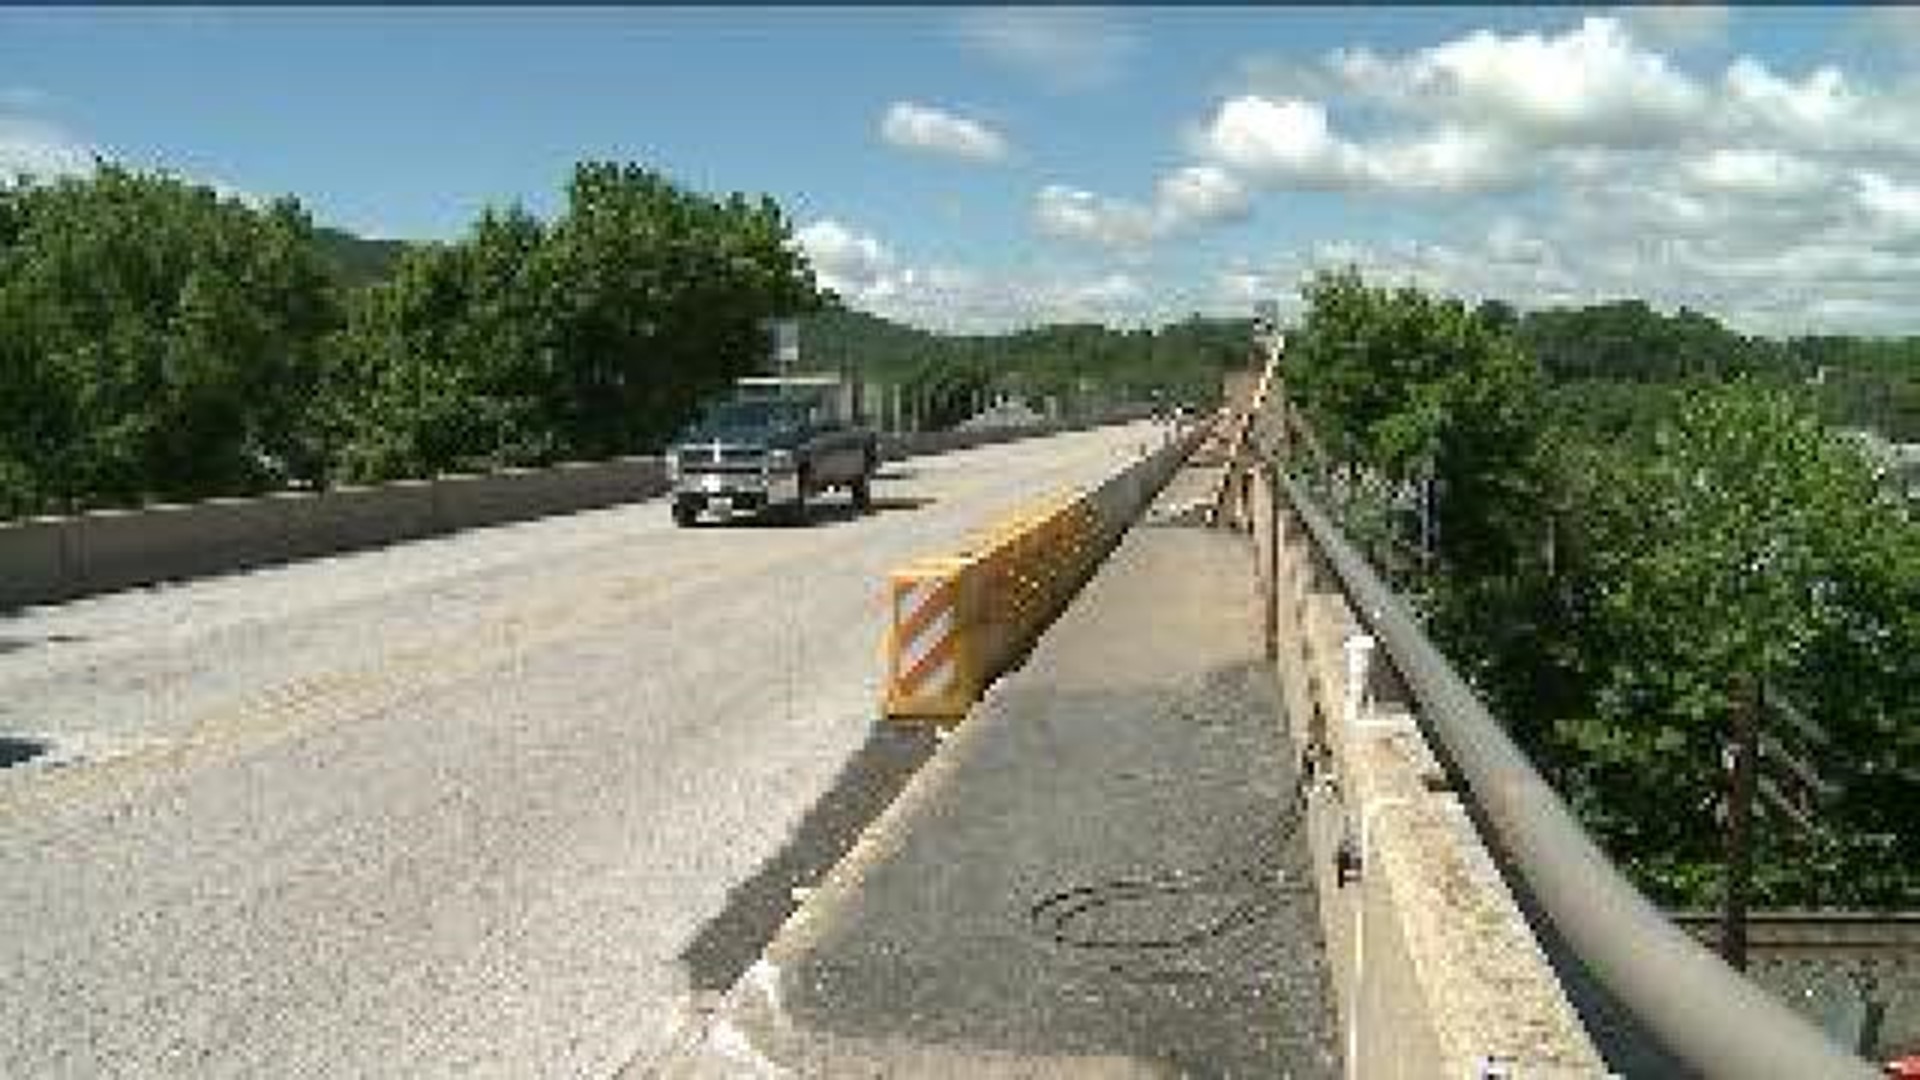 Detour And Delays: Route 209 Bridge Project